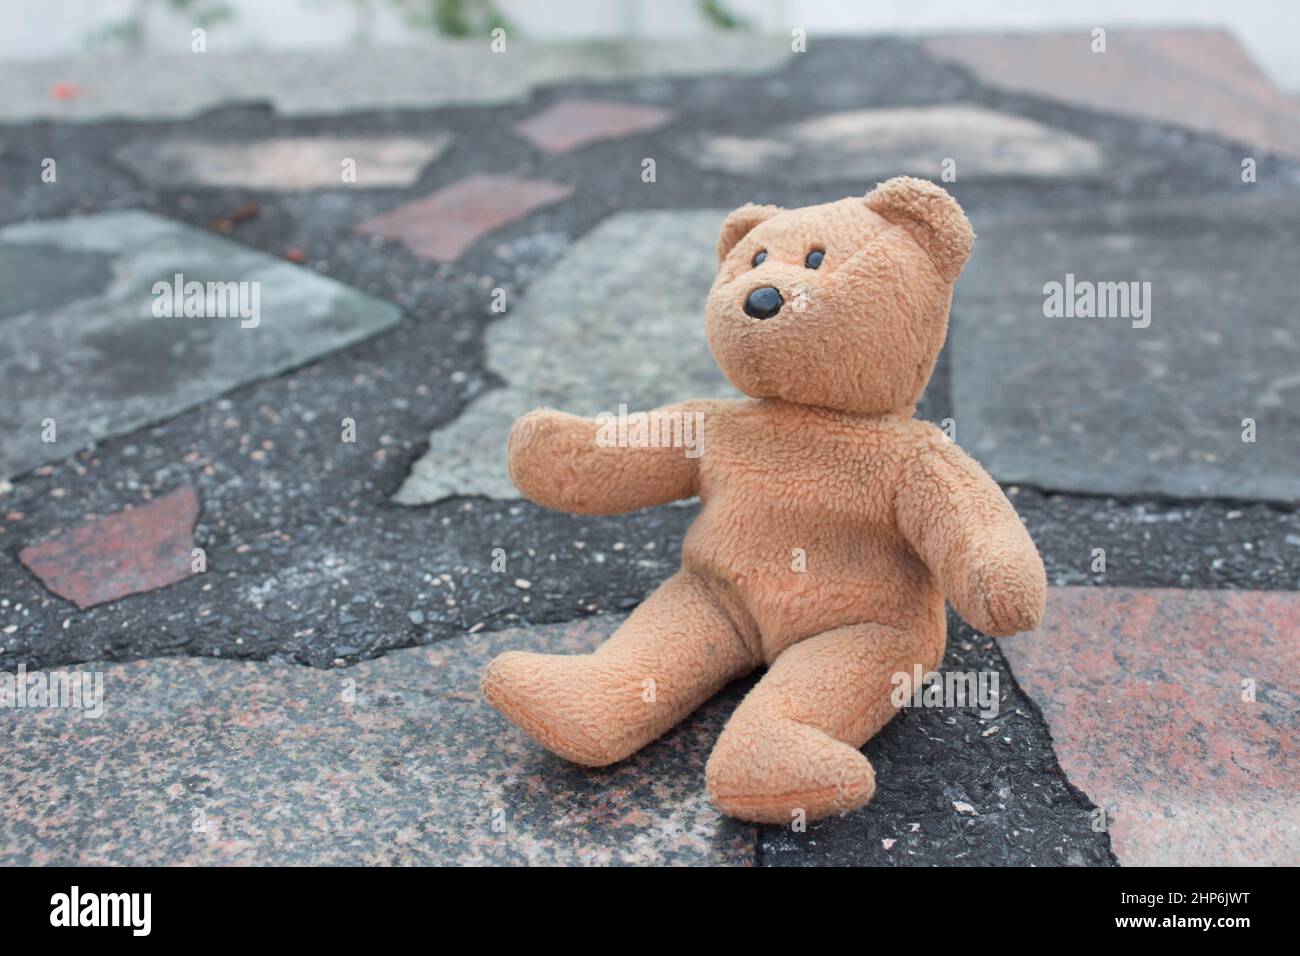 Lonely teddy bear -Fotos und -Bildmaterial in hoher Auflösung - Seite 3 -  Alamy